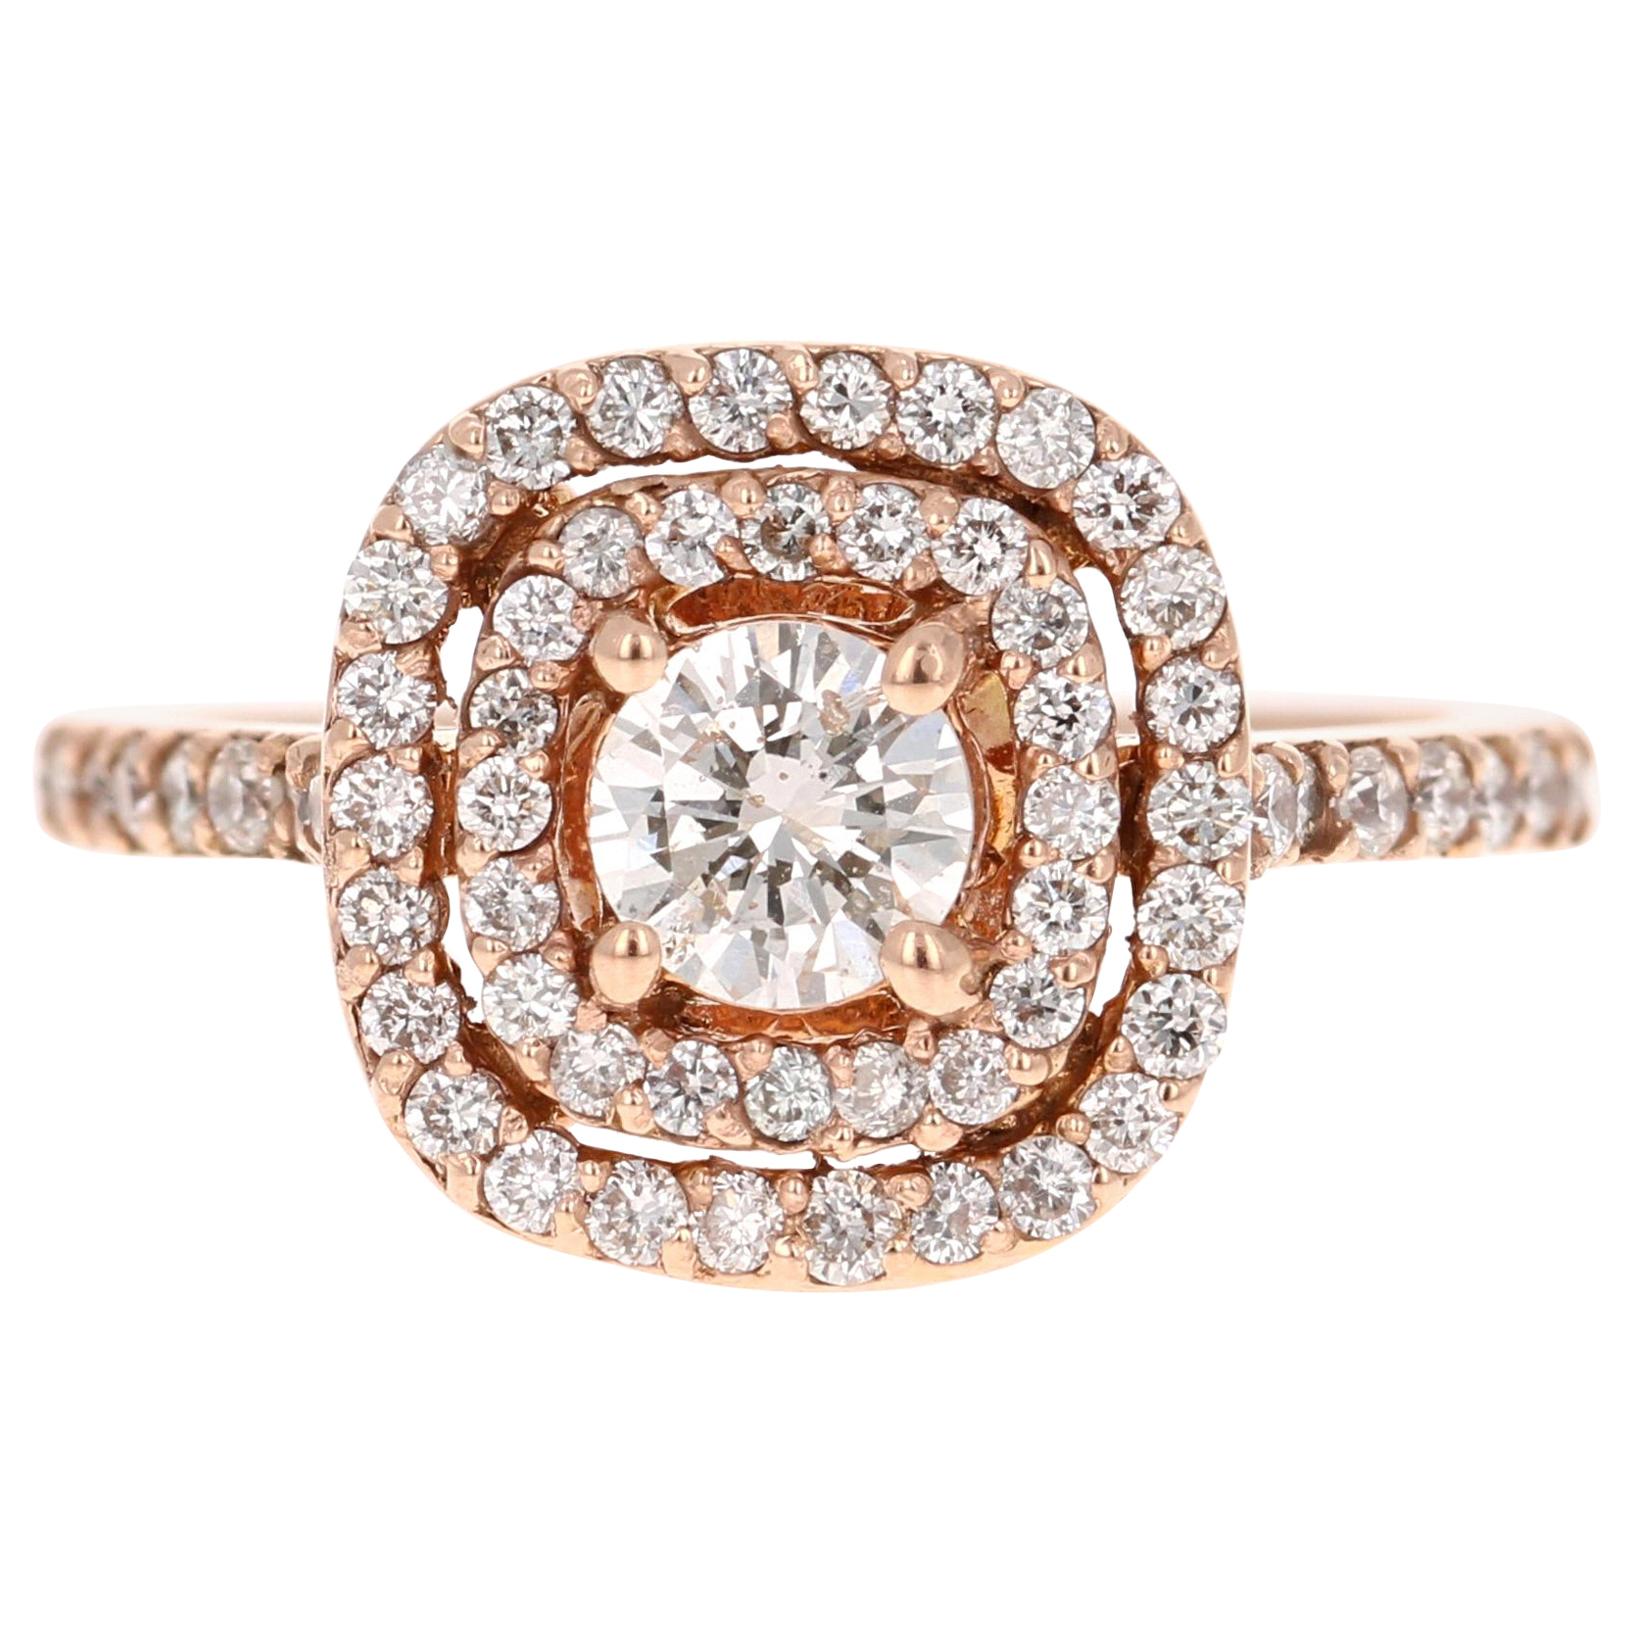 1.13 Carat Diamond Engagement Ring 14 Karat Rose Gold For Sale